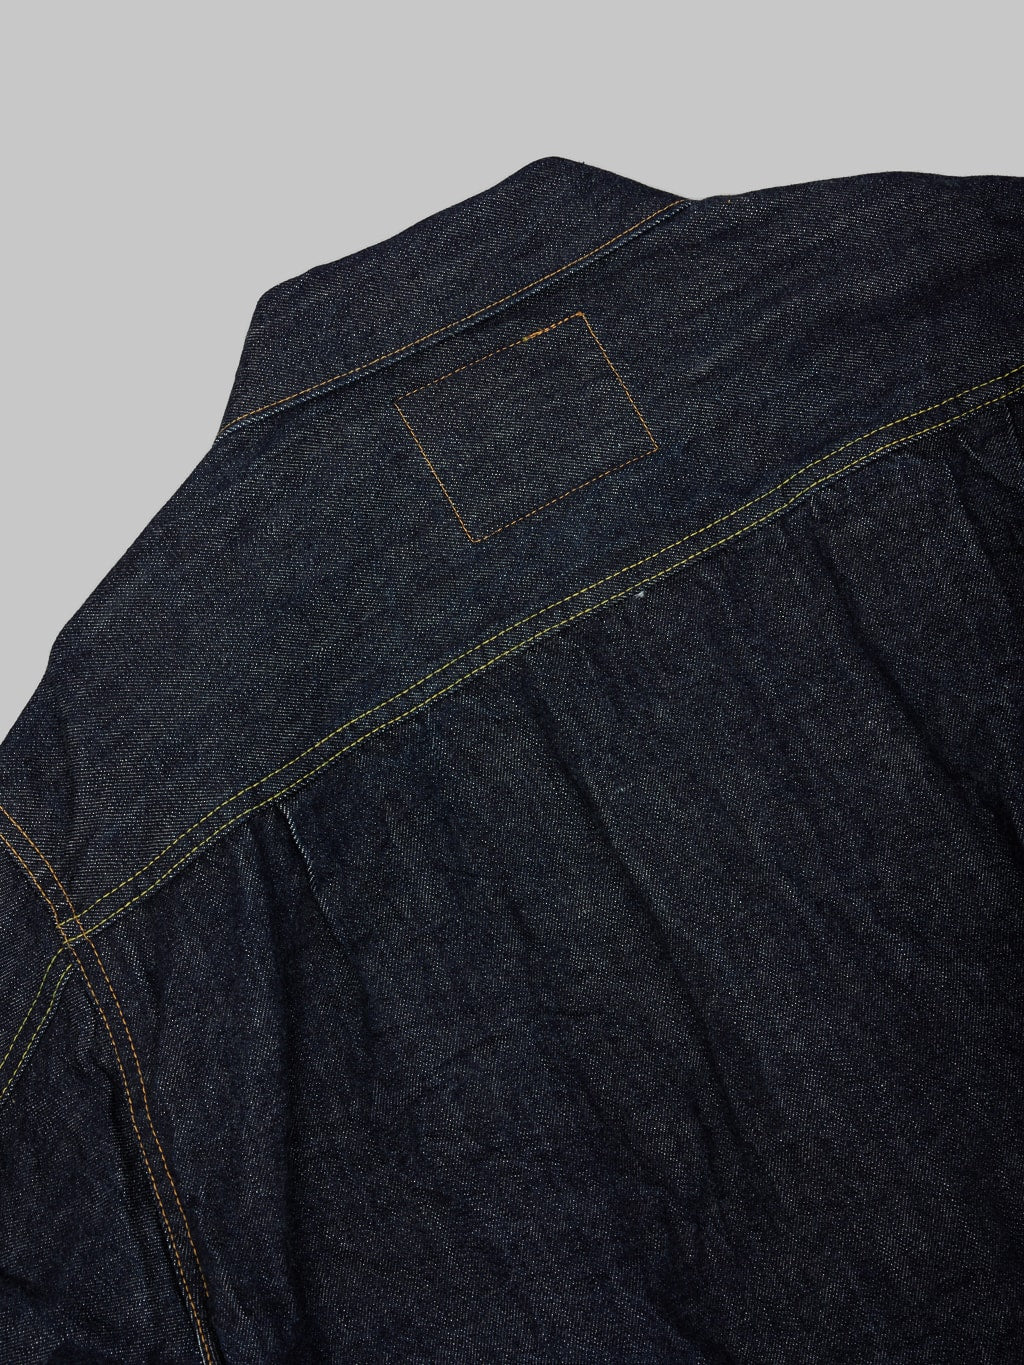 Sugar Cane 1953 Type II Denim blanket lined Jacket  seams